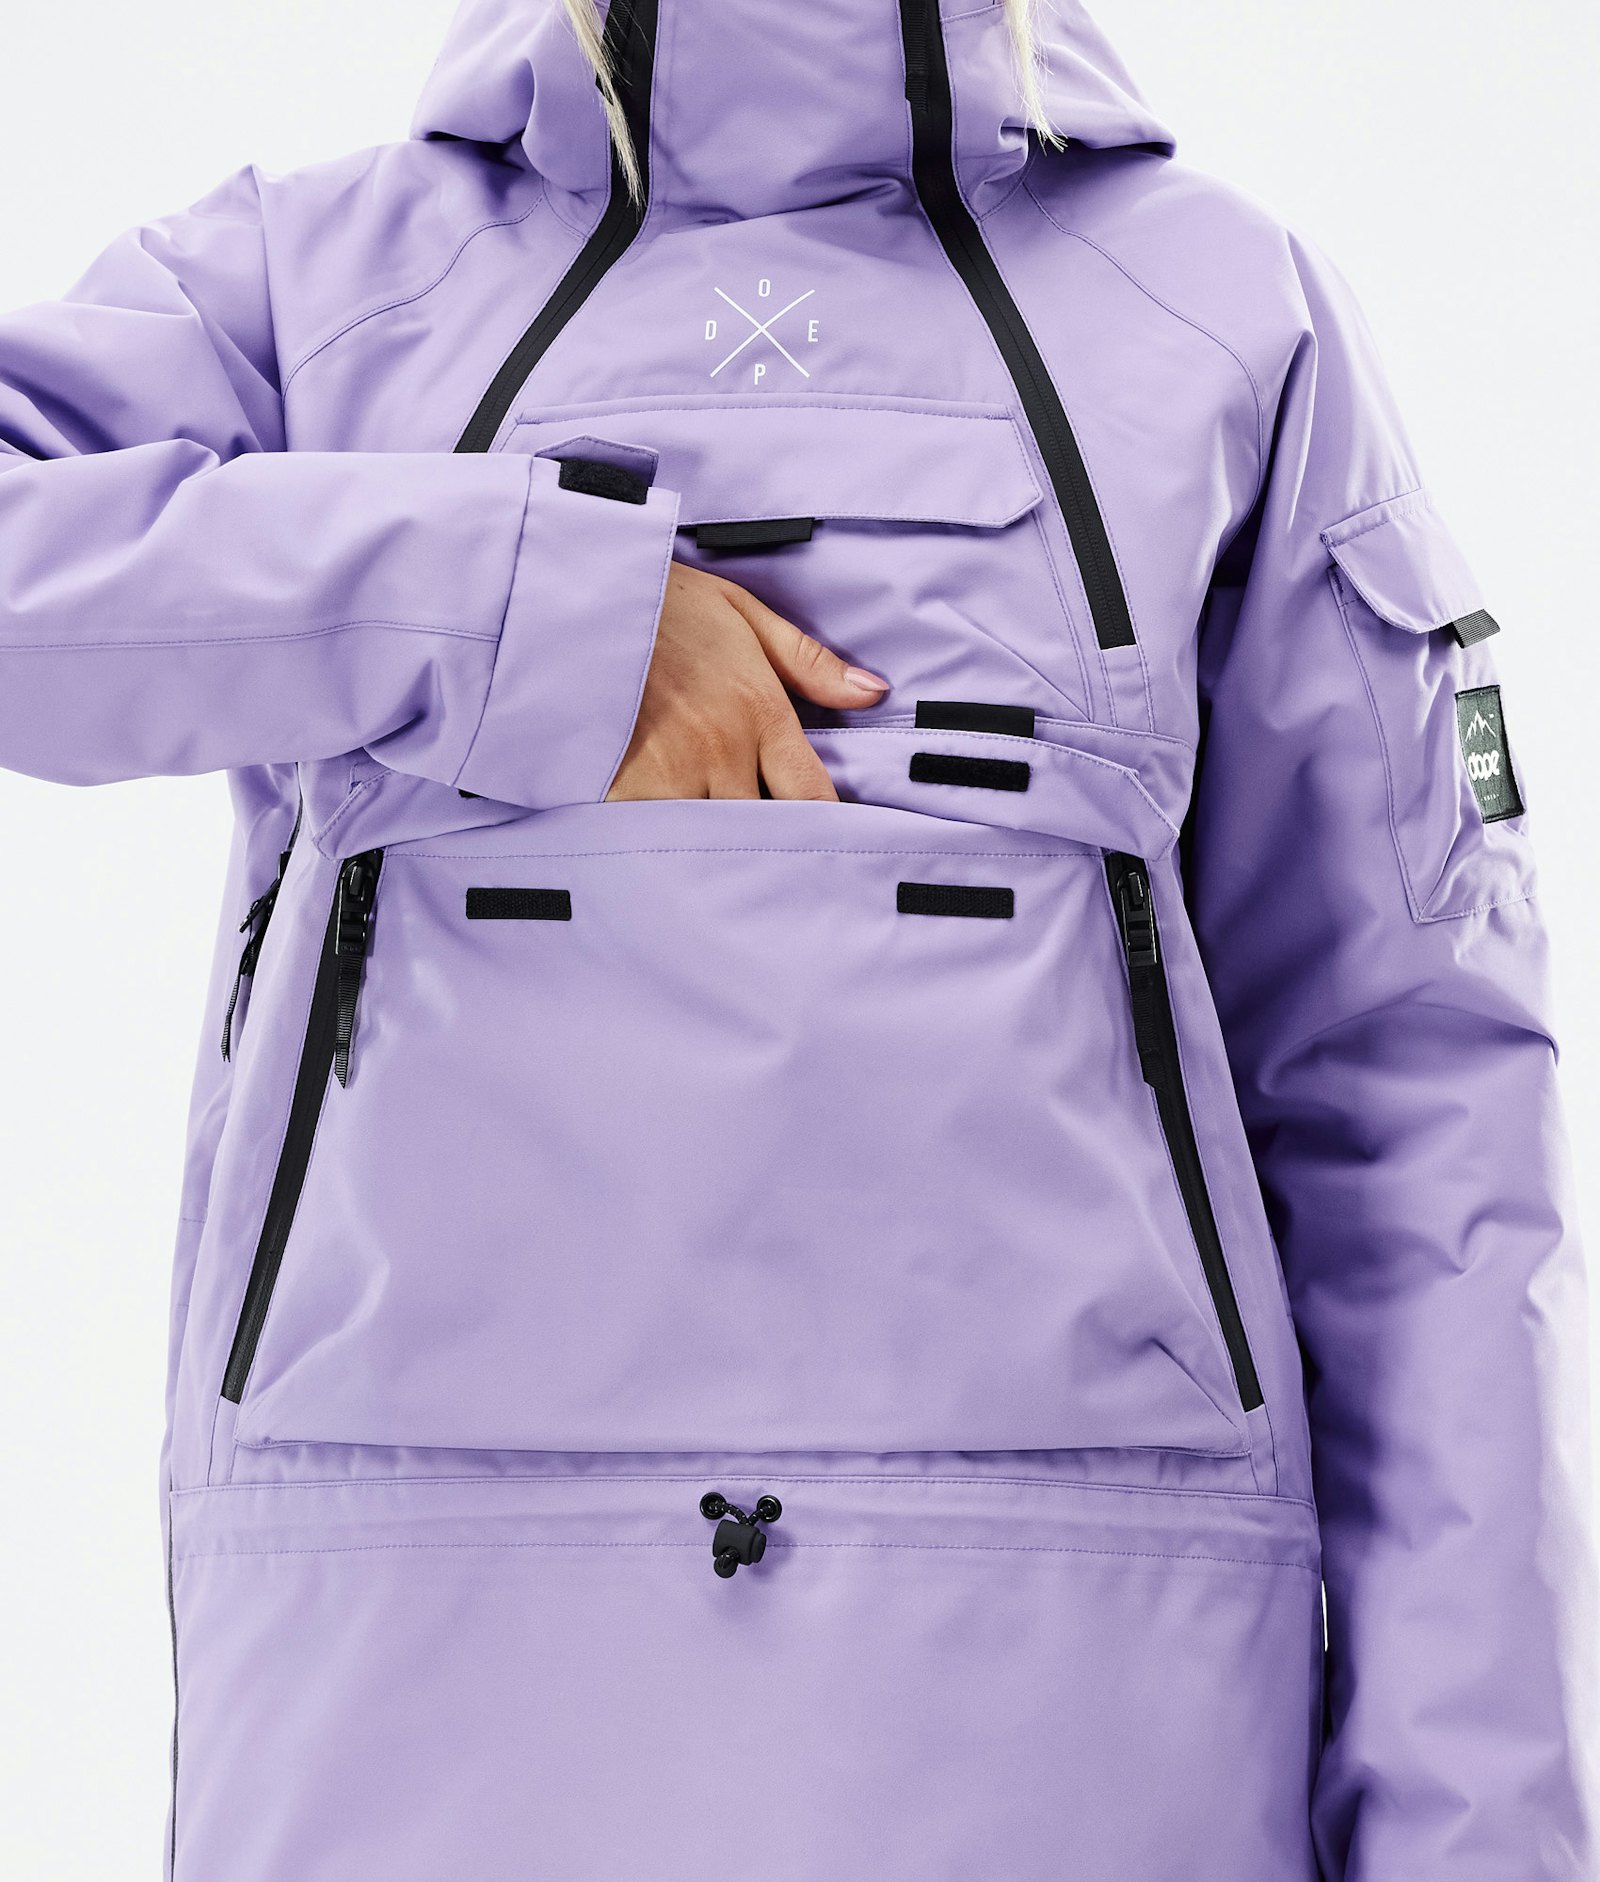 Dope Akin W 2021 Snowboard Jacket Women Faded Violet